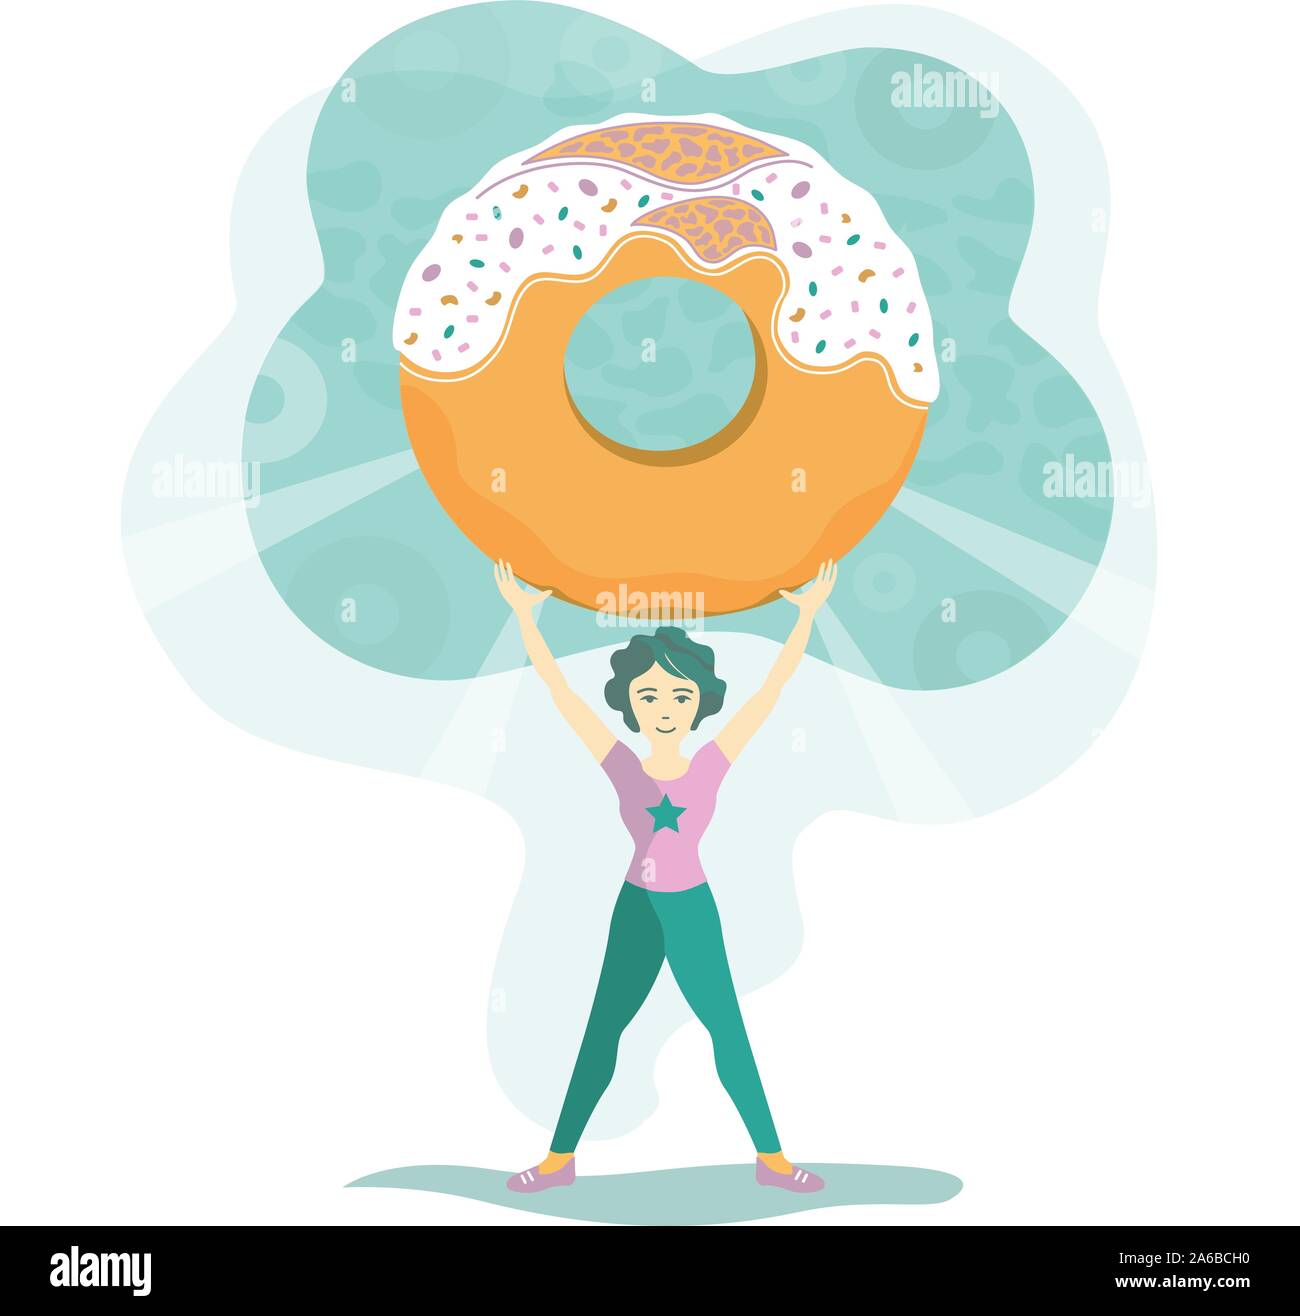 Illustration d'une femme dans les vêtements de sport se bat avec un gros sweet donut et gagne. Le concept des dangers d'une mauvaise alimentation, des plaques de cholestérol Illustration de Vecteur